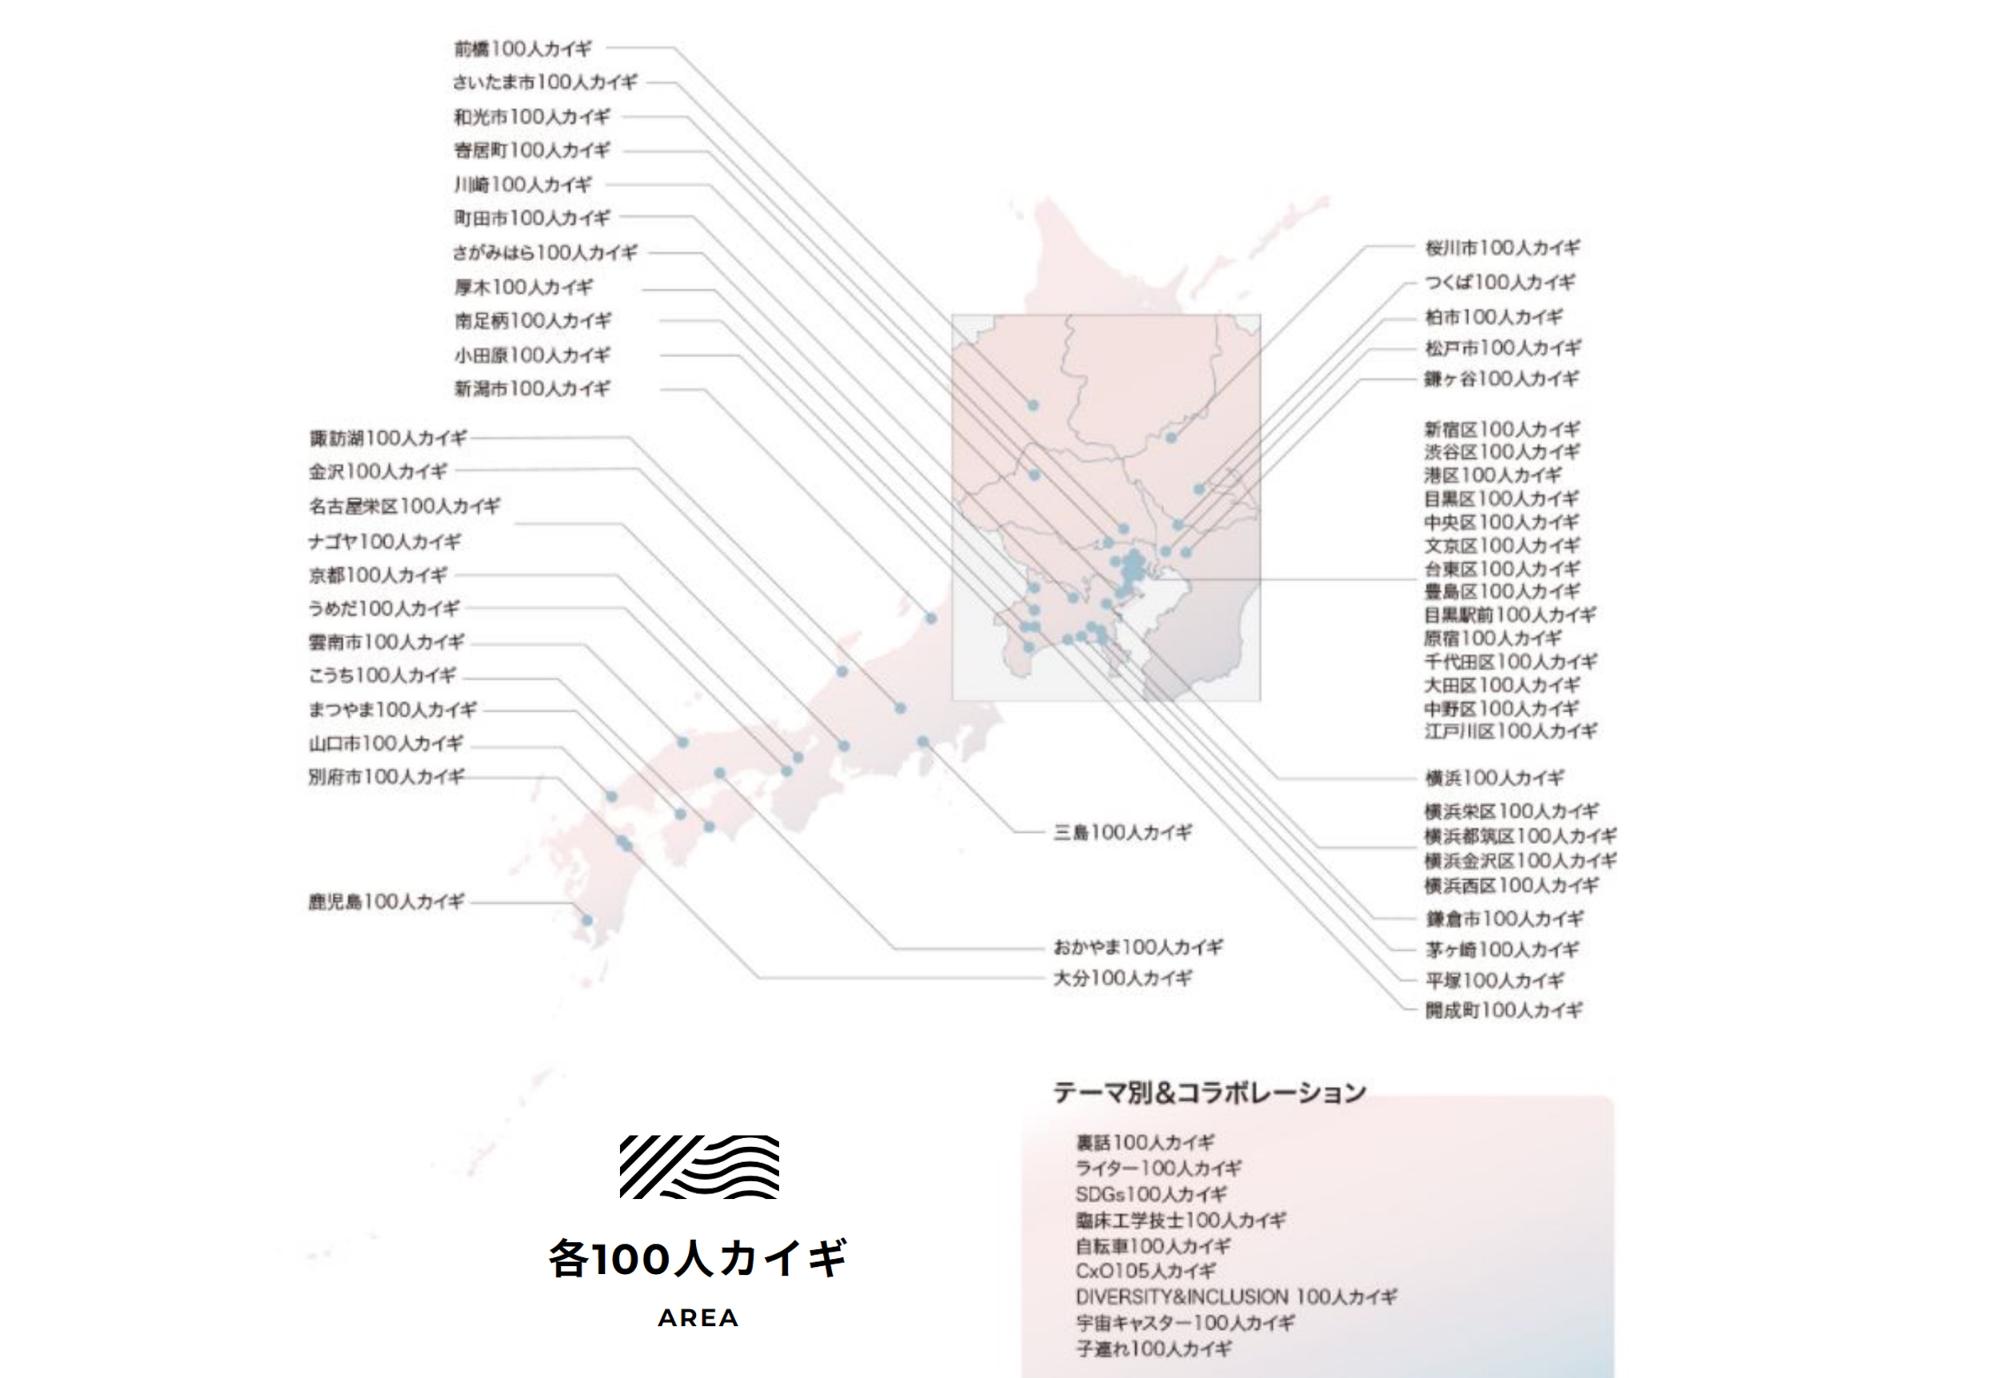 東京都港区から始まり全国各地に広まる。現在、「カイギ」を開催している地域は50以上にのぼる。（出典：「100人カイギ」公式サイトより）